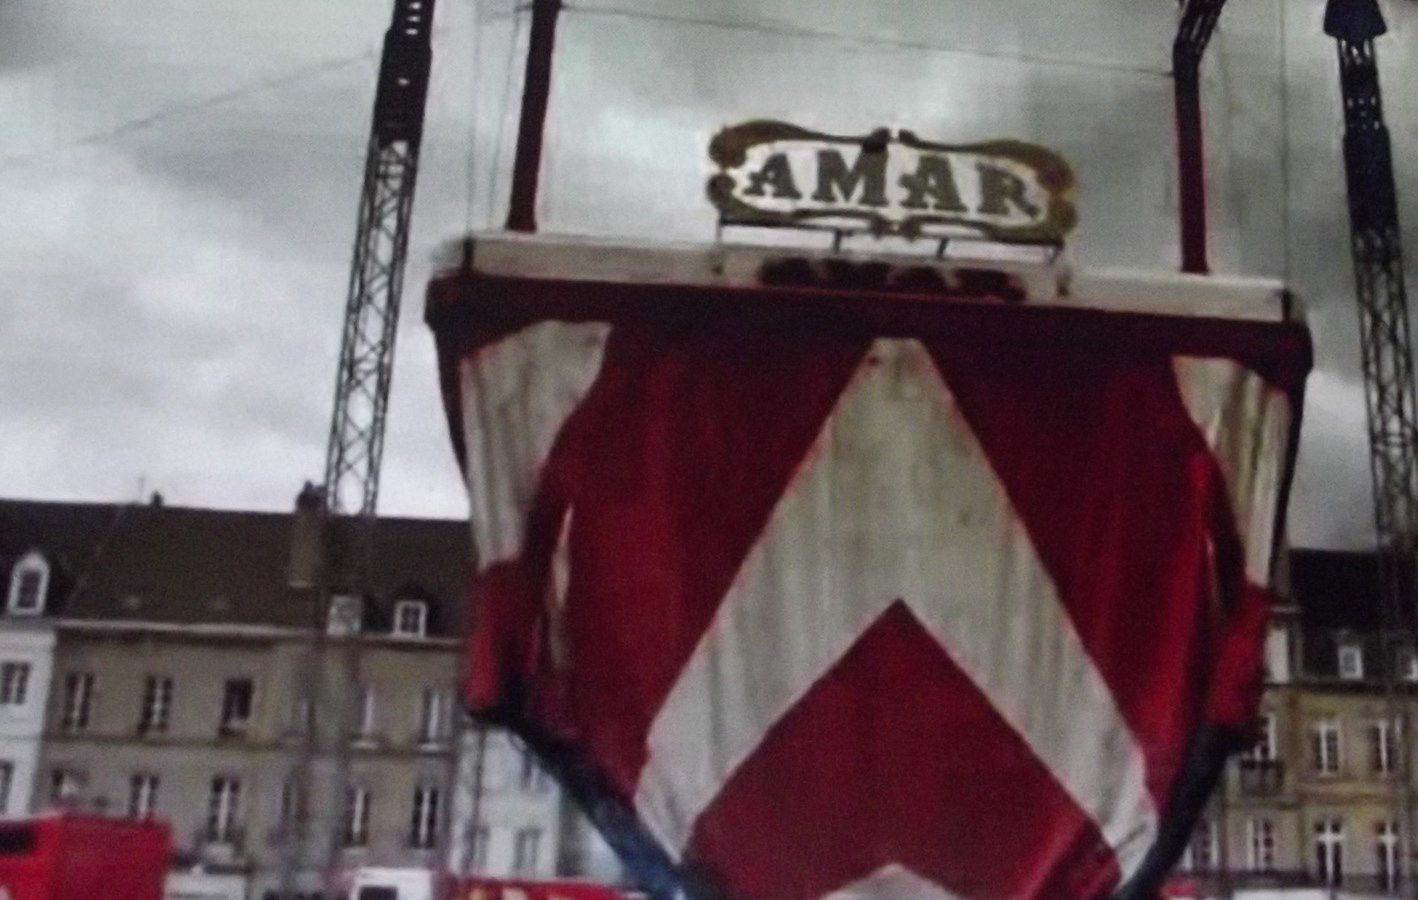 L'arrivée du Cirque Amar au centre ville, à voir ! ¤¤¤ Photos (les clairs) d'Autun-infos et les photos foncées proviennent d'une vidéo faite par le site "Gens du Morvan", excellent site. ¤¤¤